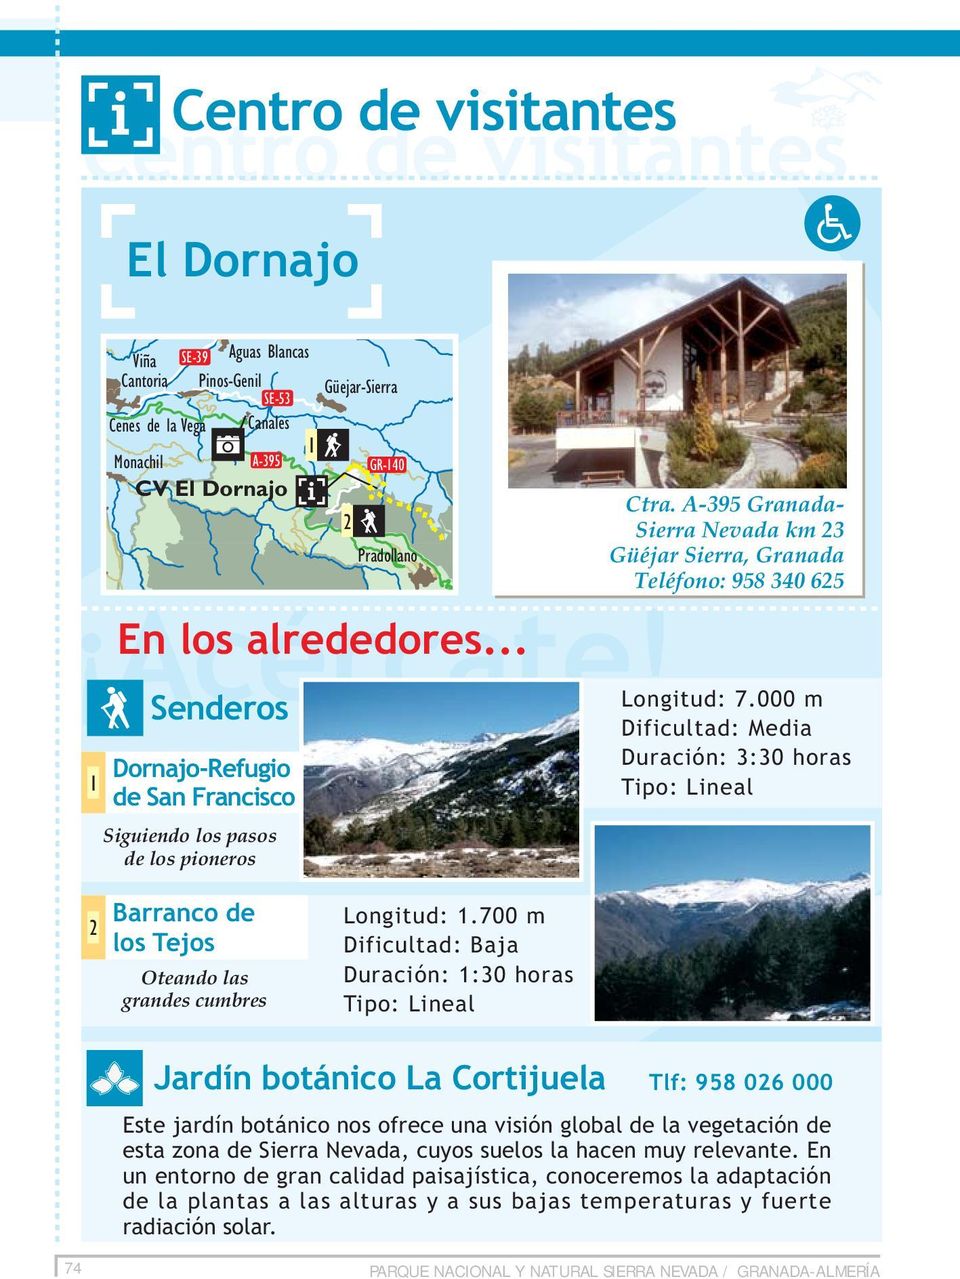 000 m Duración: 3:30 horas Barranco de los Tejos Oteando las grandes cumbres Longitud:.